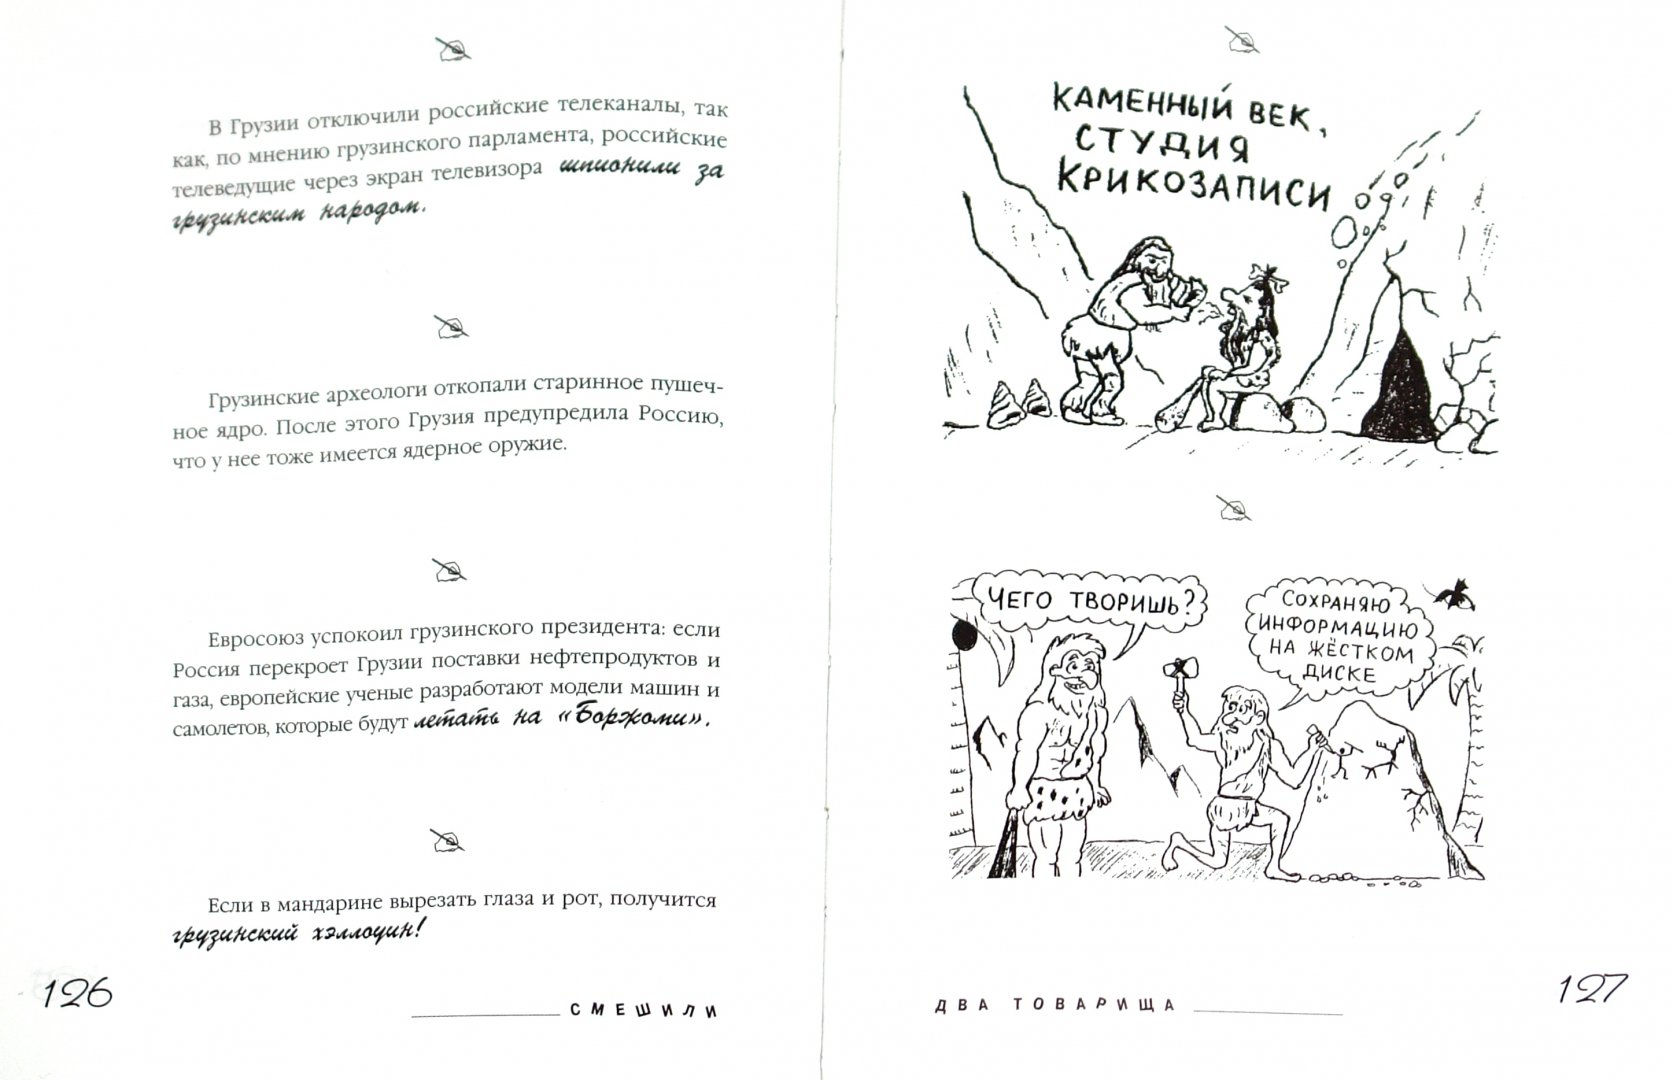 Иллюстрация 1 из 3 для Смешили два товарища - Задорнов, Польский | Лабиринт - книги. Источник: Лабиринт